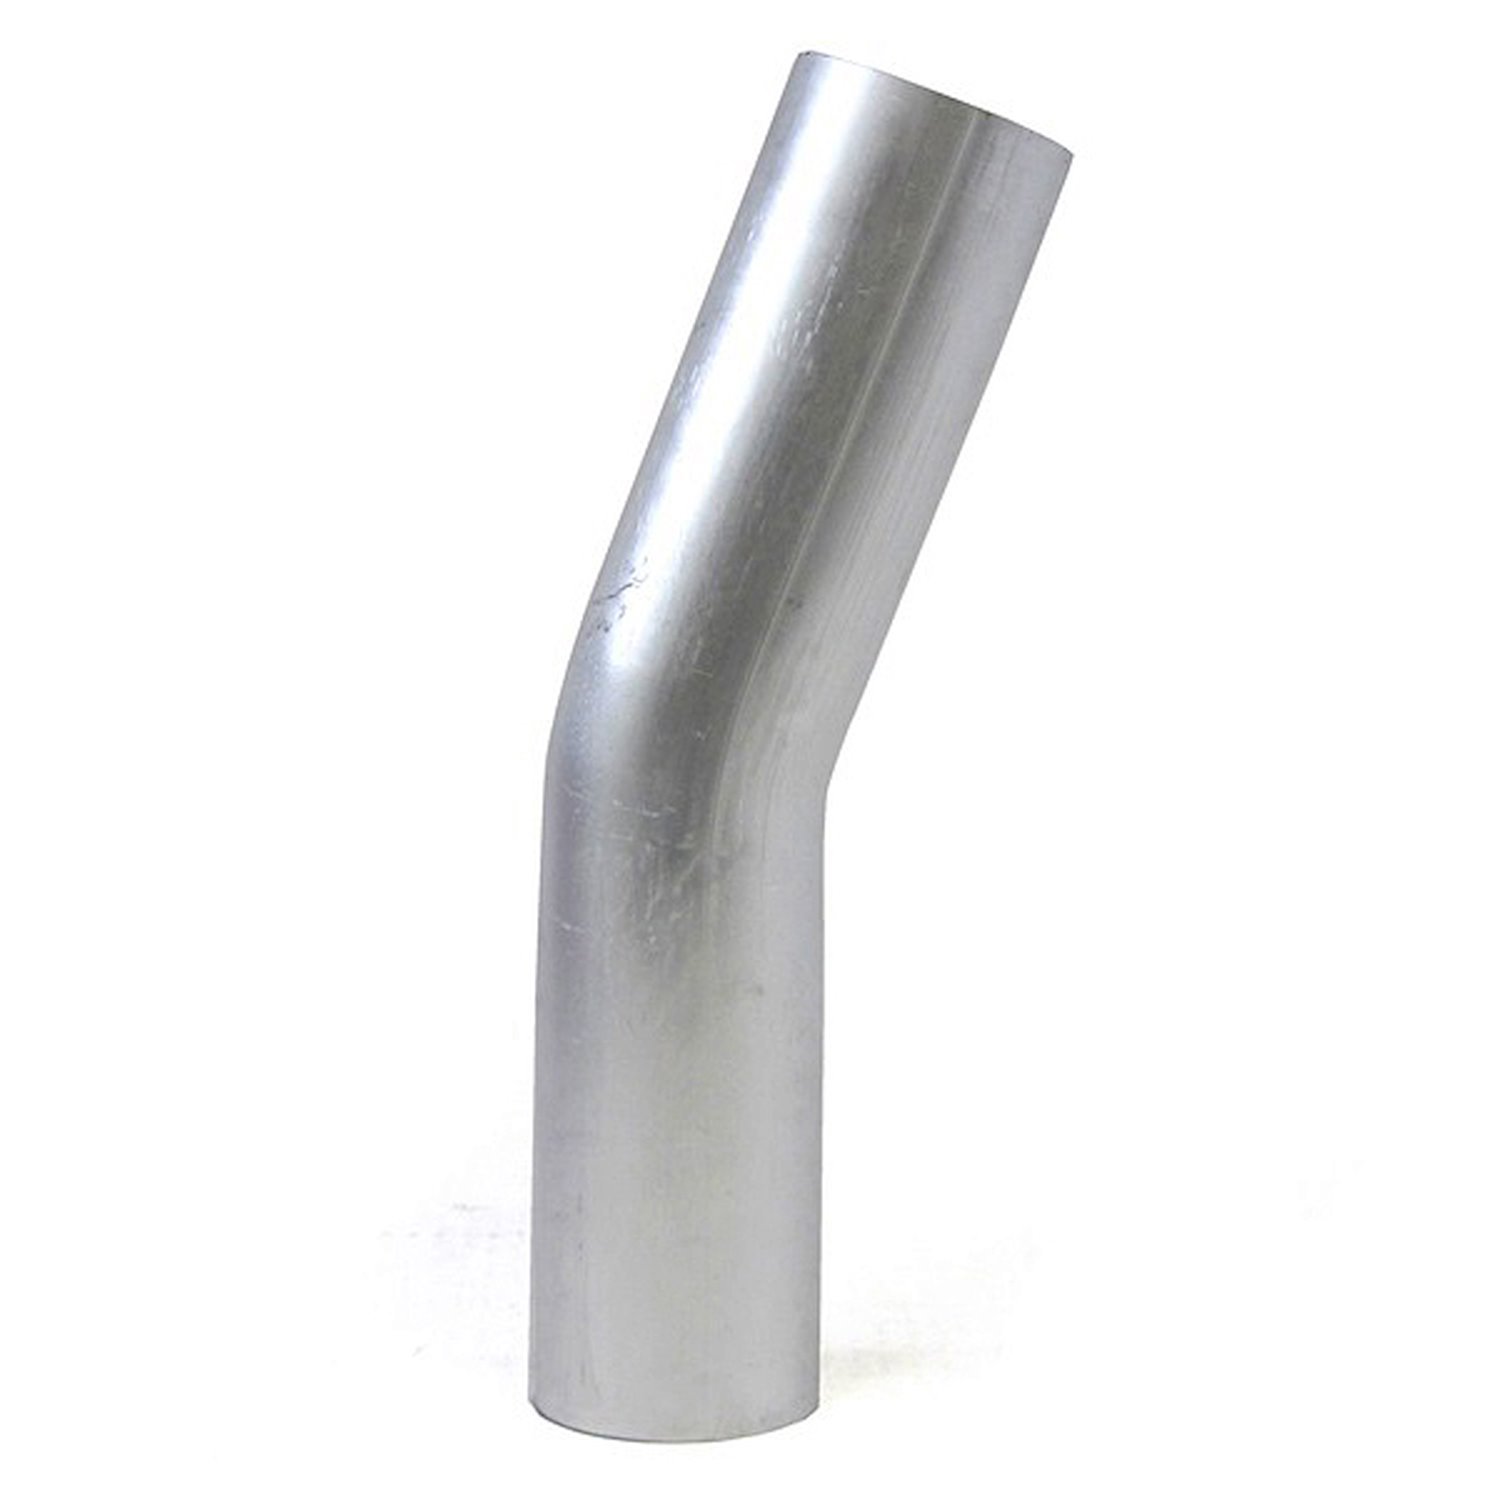 AT20-275-CLR-275 Aluminum Elbow Tube, 6061 Aluminum, 20-Degree Bend Elbow Tubing, 2-3/4 in. OD, Tight Radius, 2-3/4 in. CLR